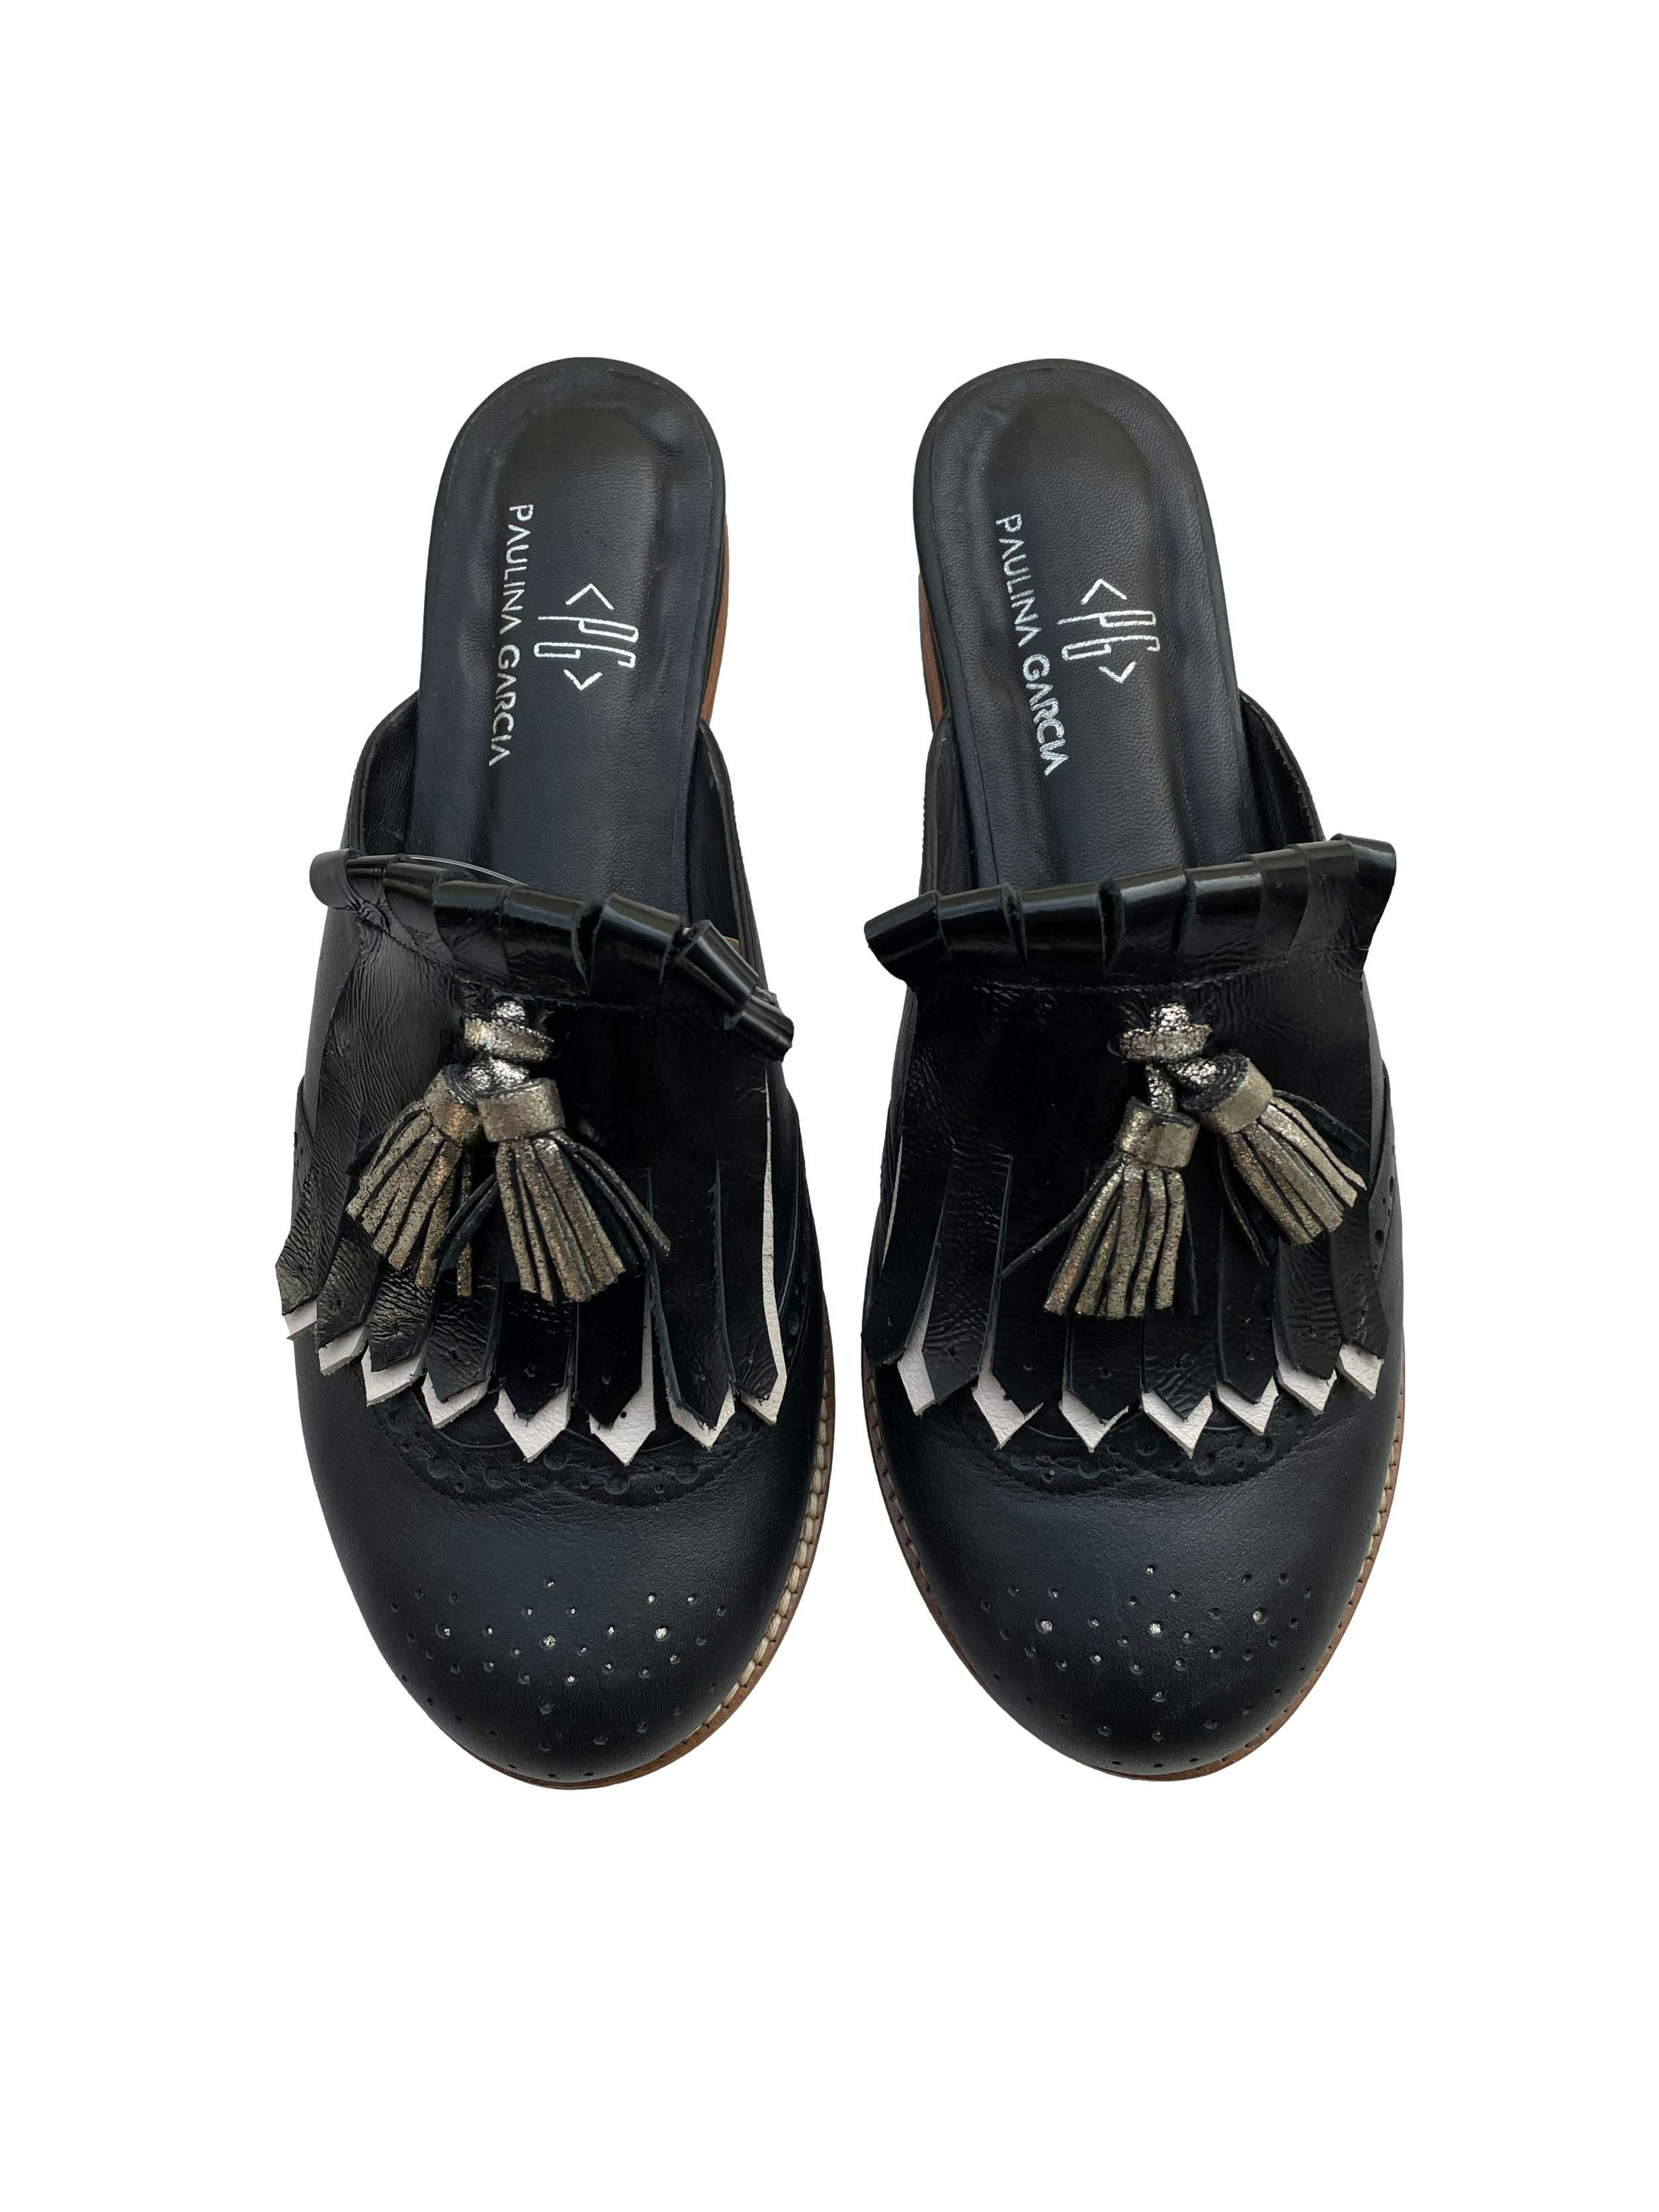 Zapatos mule Paulina Garcia, de cuero negro con flecos y borlas plateadas. Estado como nuevo. 